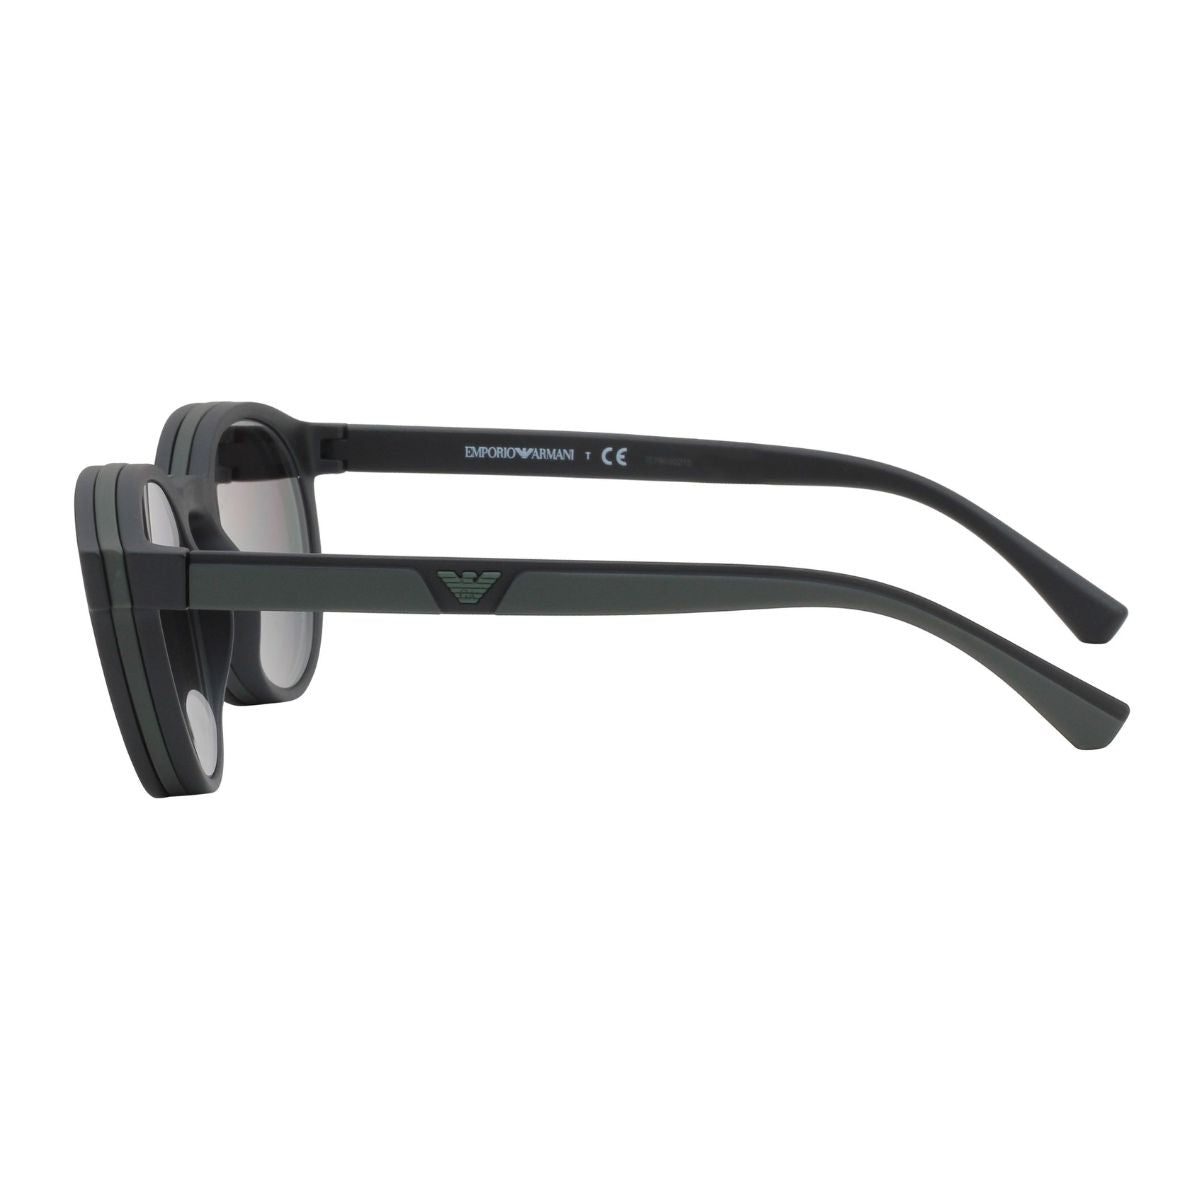 "Emporio Armani EA 4152 5042/1W Prescription Frame With 2 Clip- On Sunglass For Men's At Optorium"